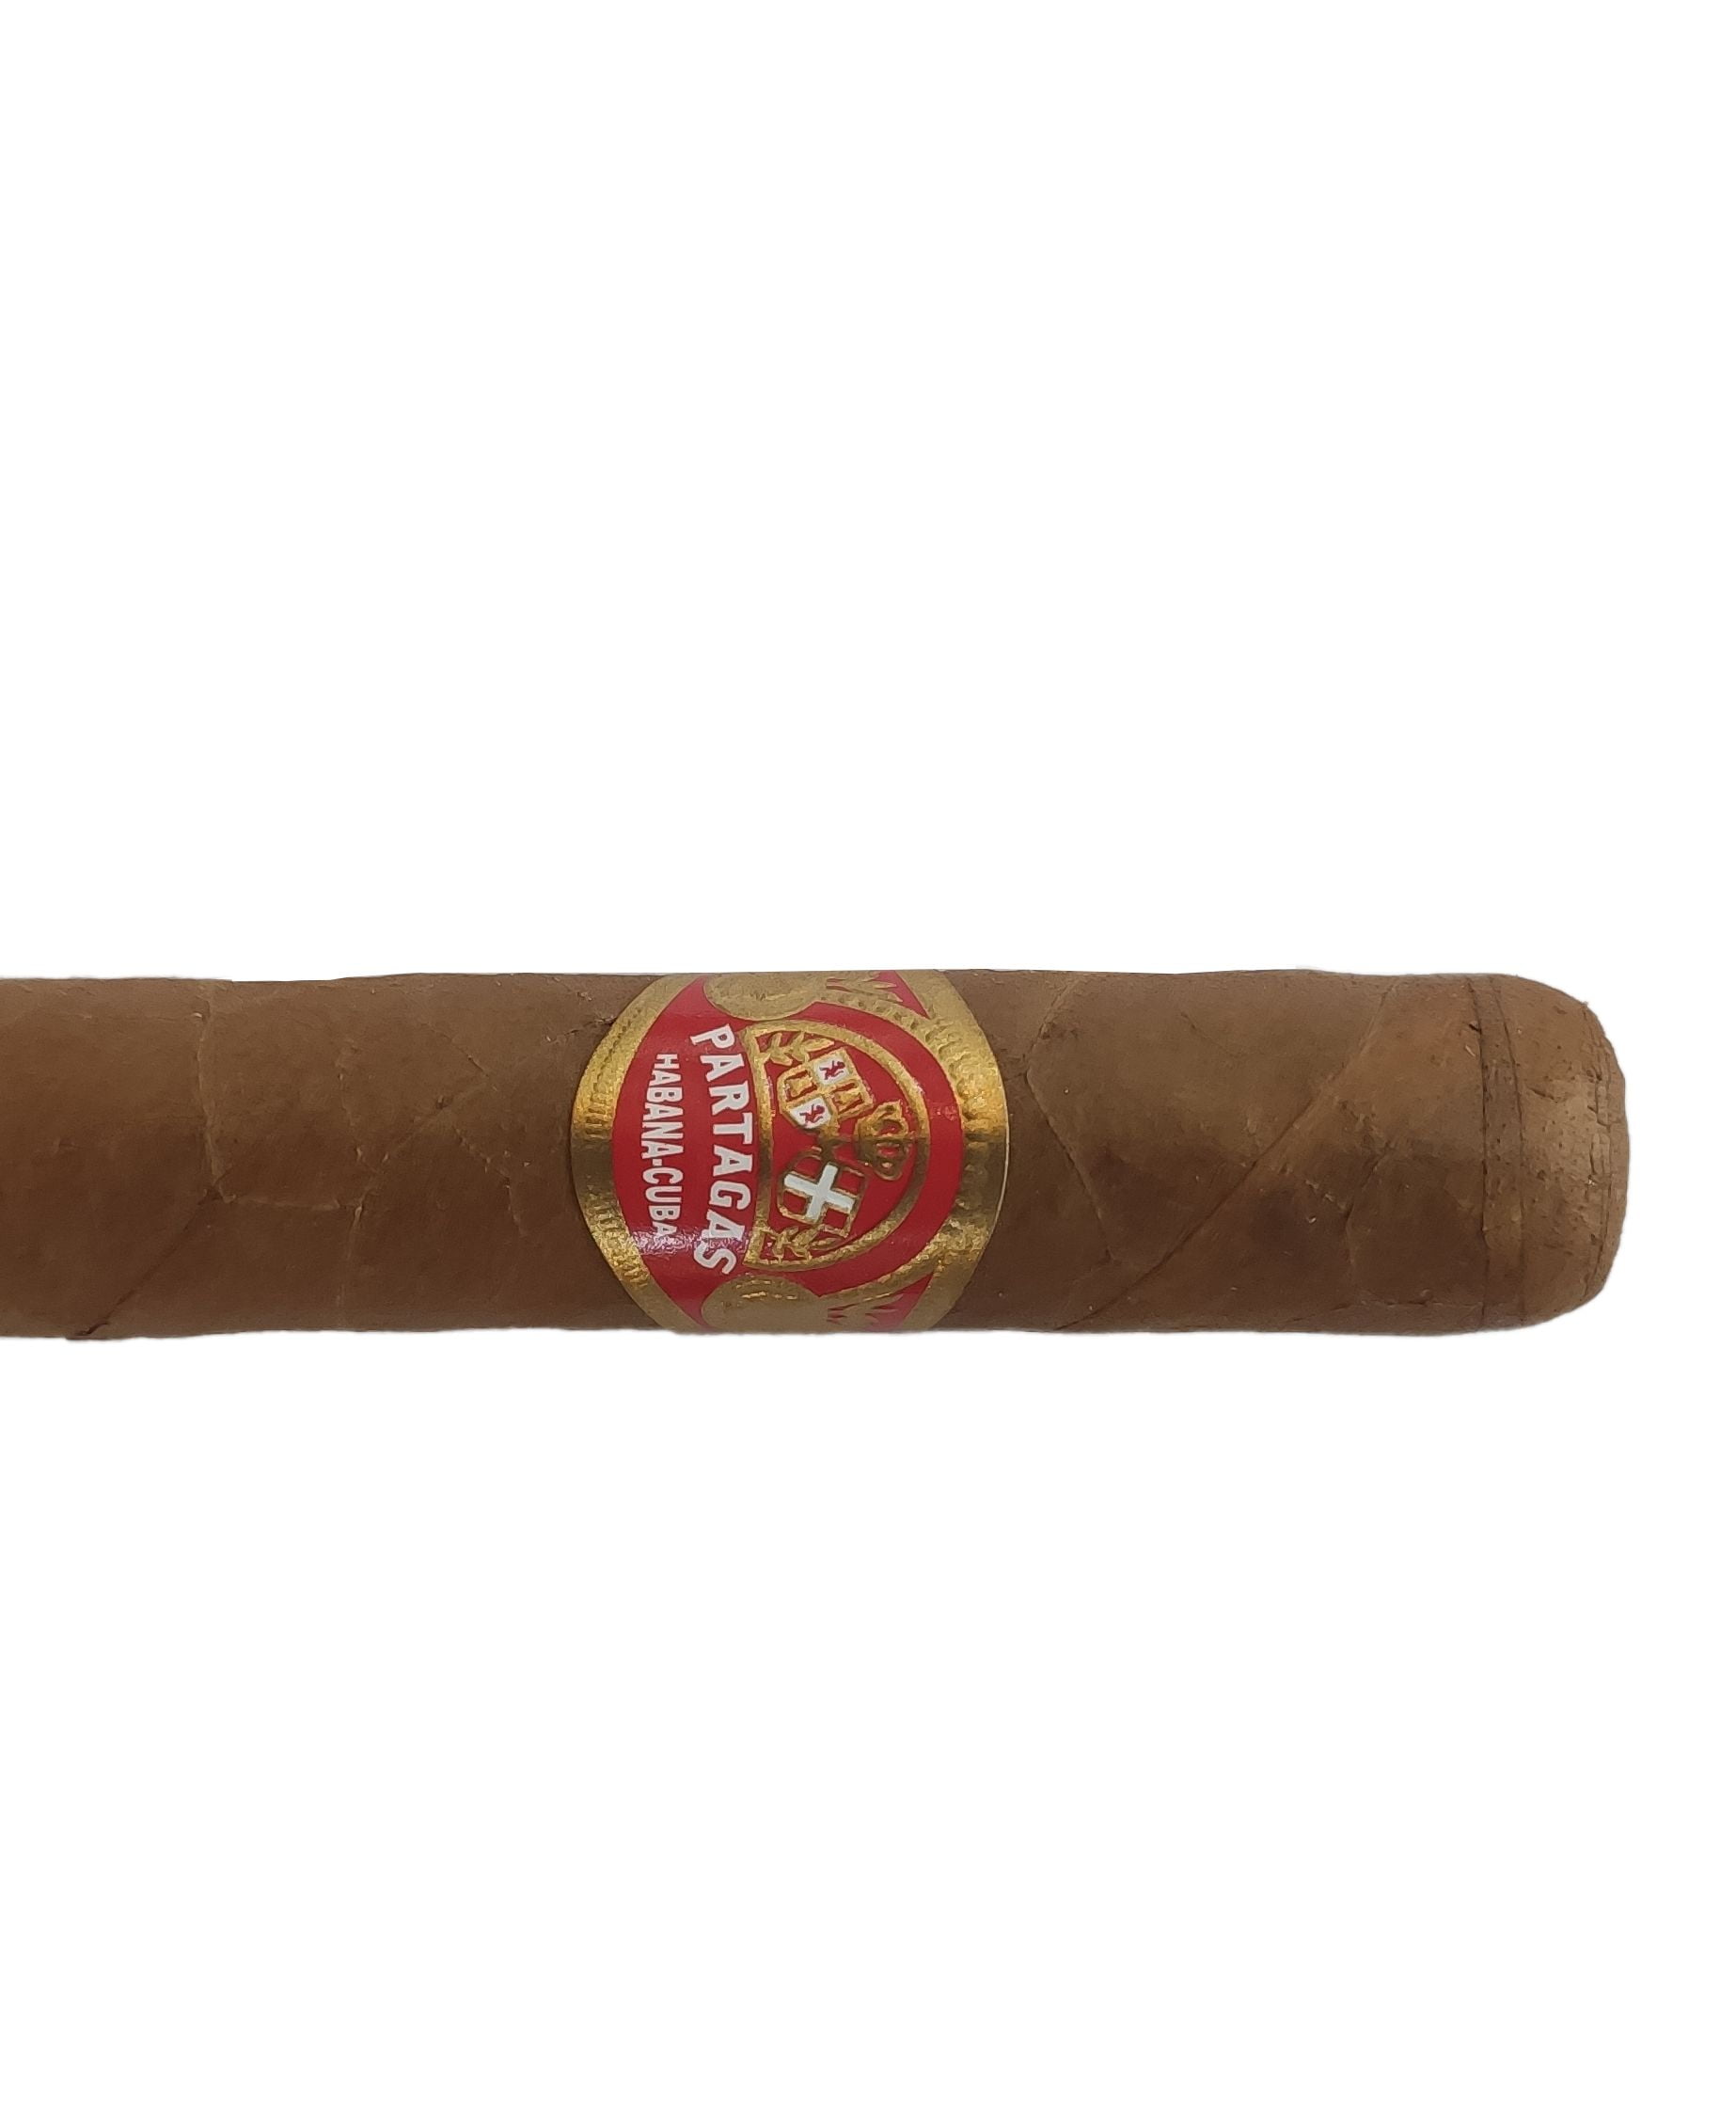 Cigar Partagas Coronas